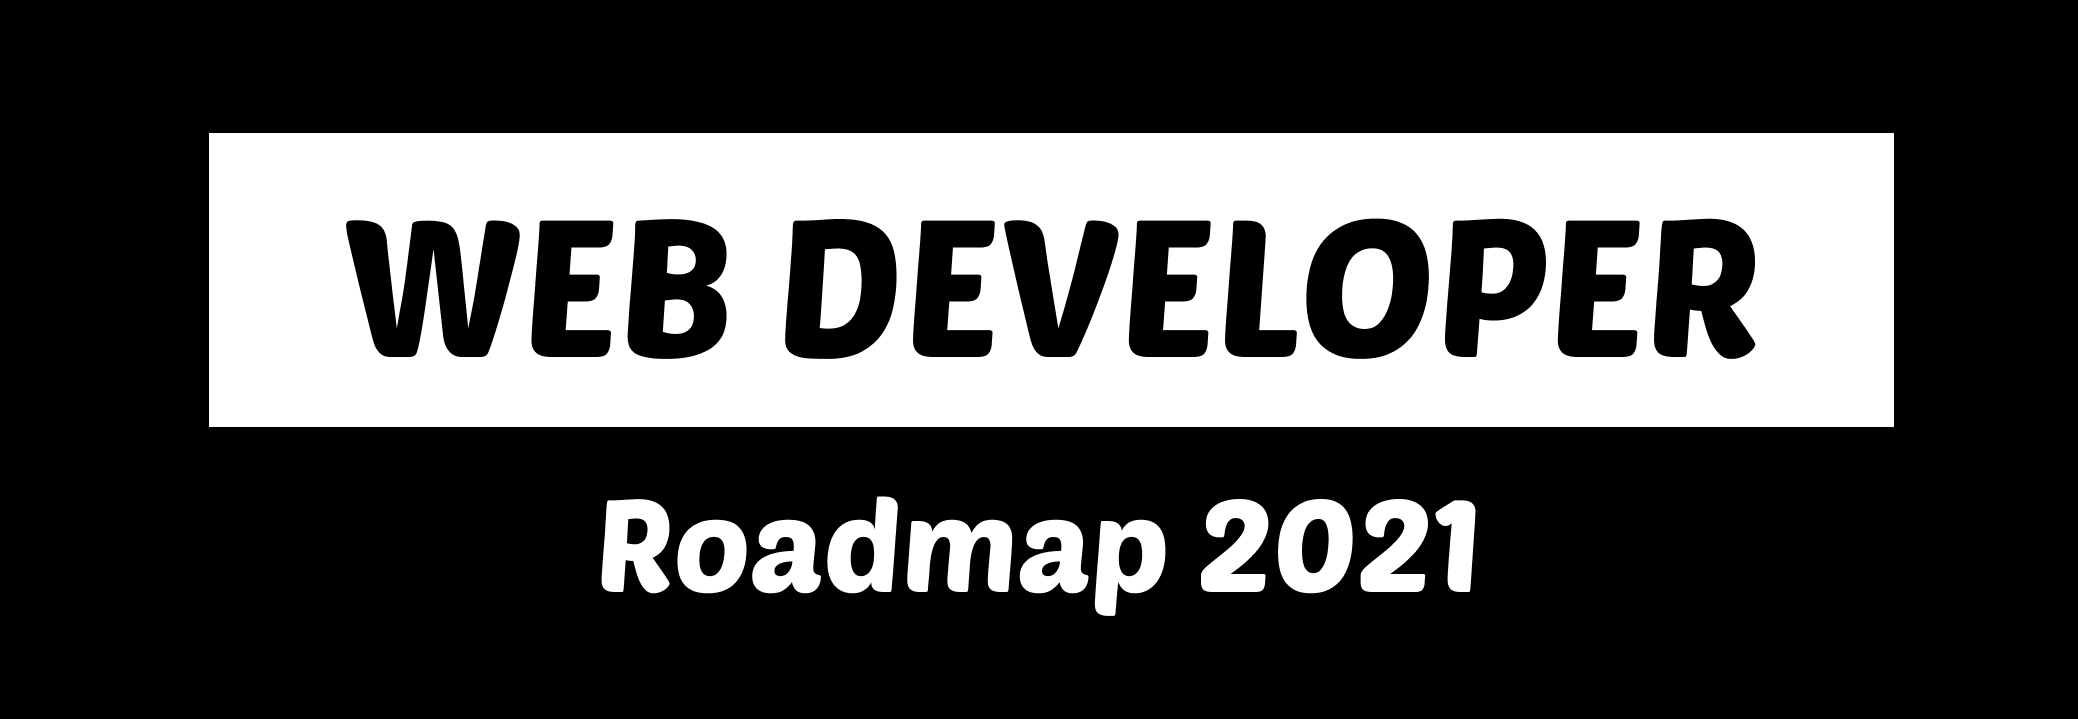 Web Developer Roadmap - 2021